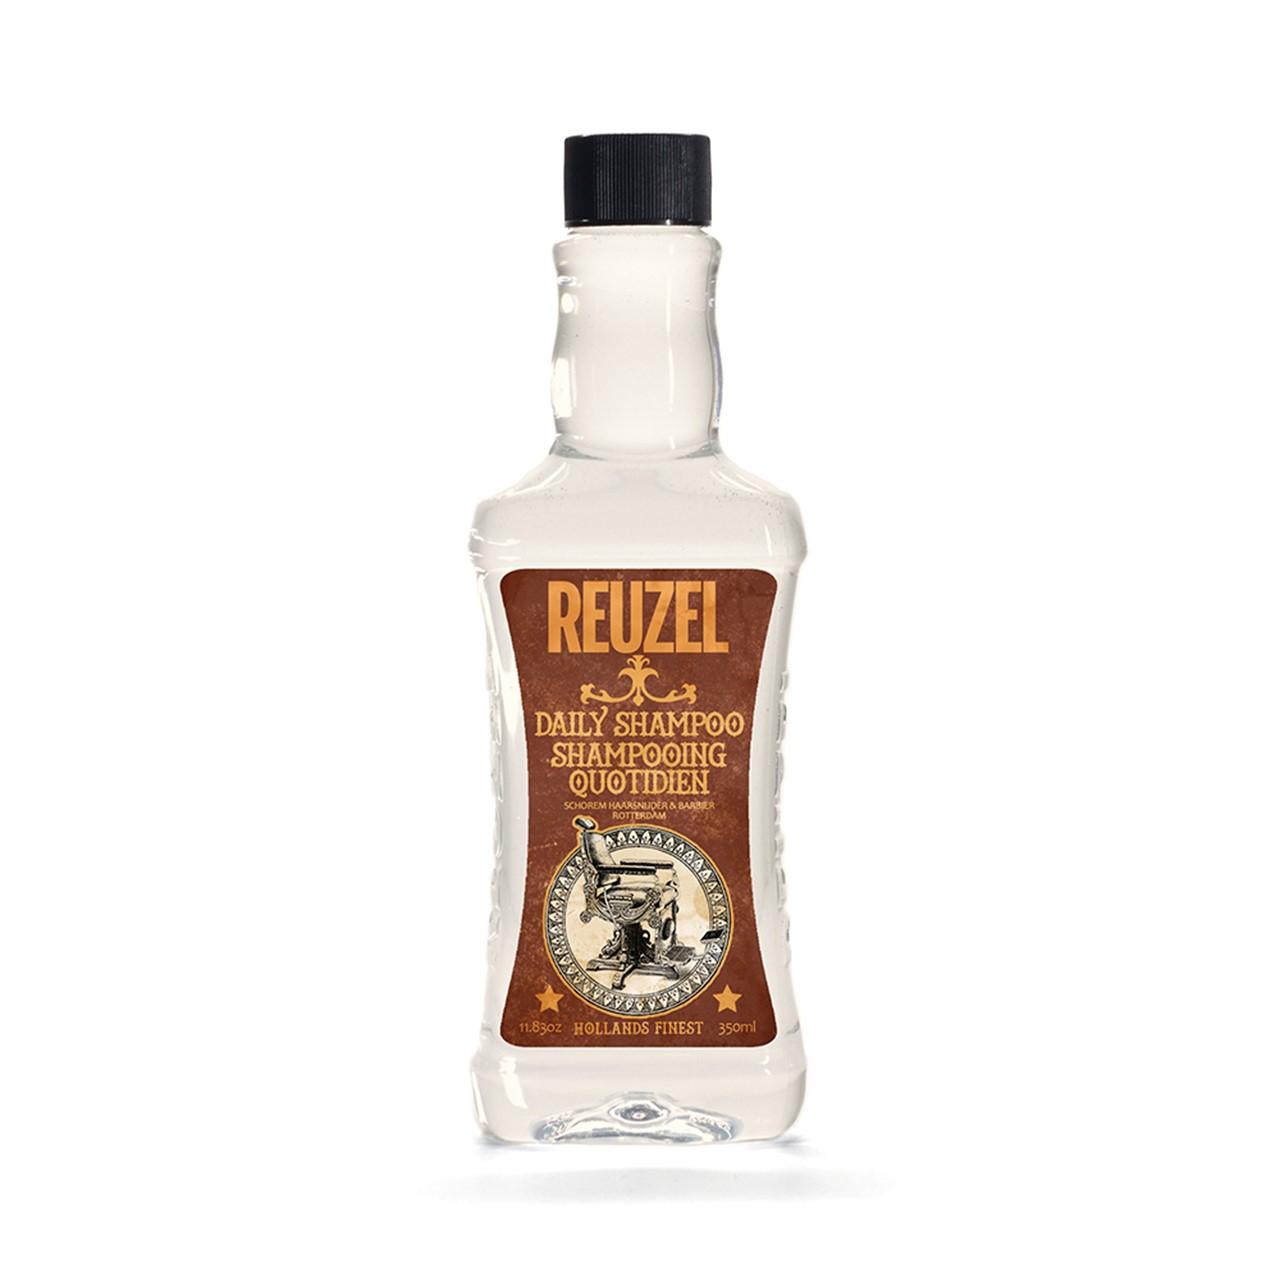 Reuzel Daily Shampoo 350ml (11.83 fl oz)